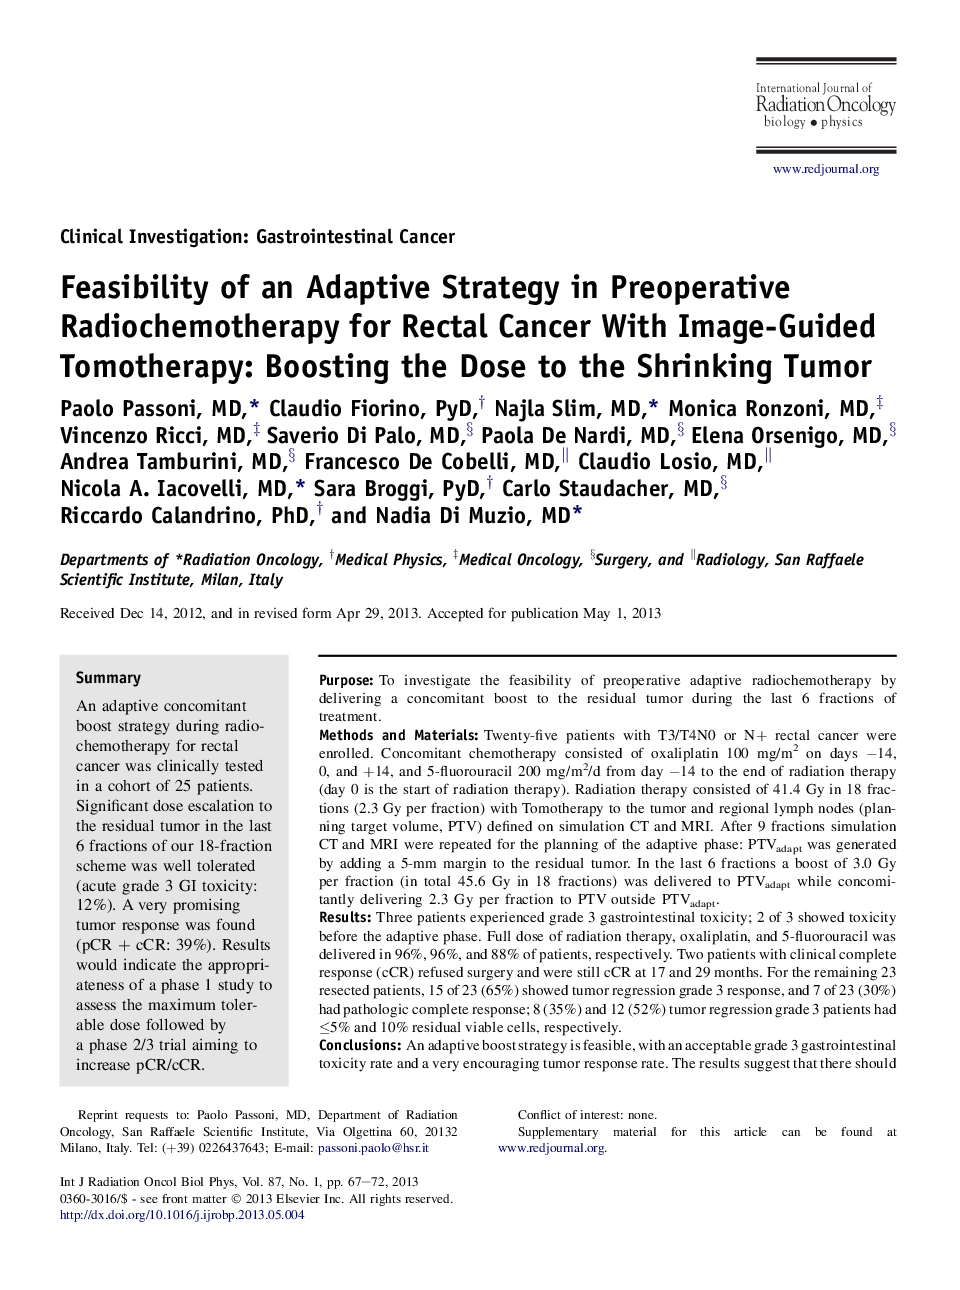 امکان سنجی استراتژی انطباق در رادیو شیمی درمانی قبل از عمل برای سرطان رکتوم با تروما با تصویر برداری: افزایش دوز در کاهش تومور 